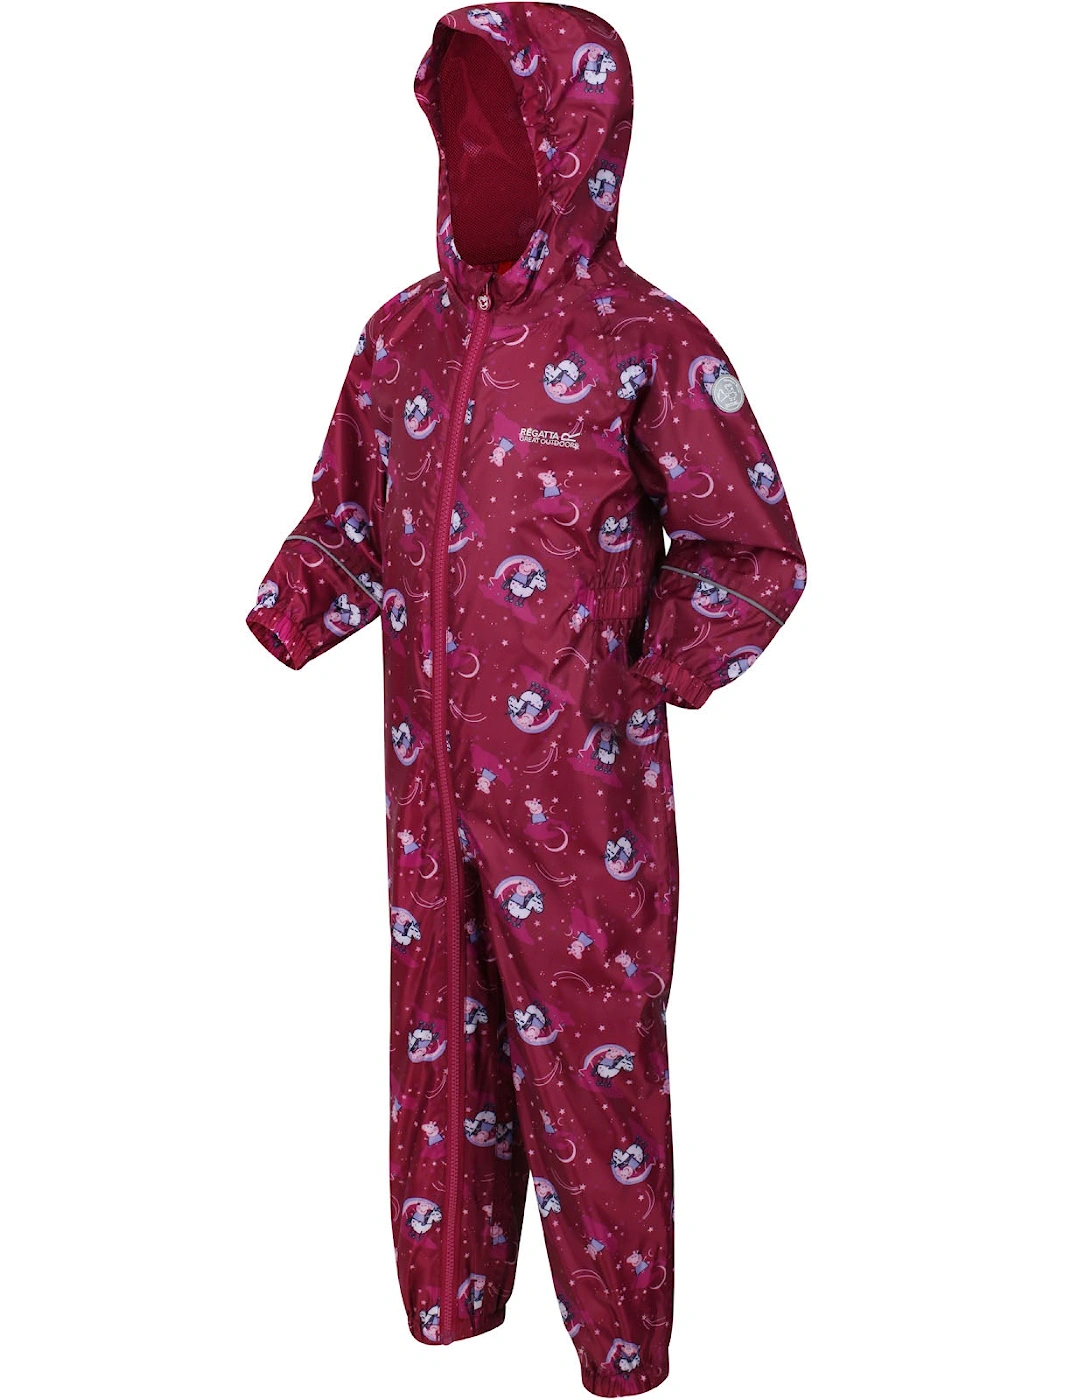 Kids Peppa Pig Pobble Print Waterproof Puddle Suit